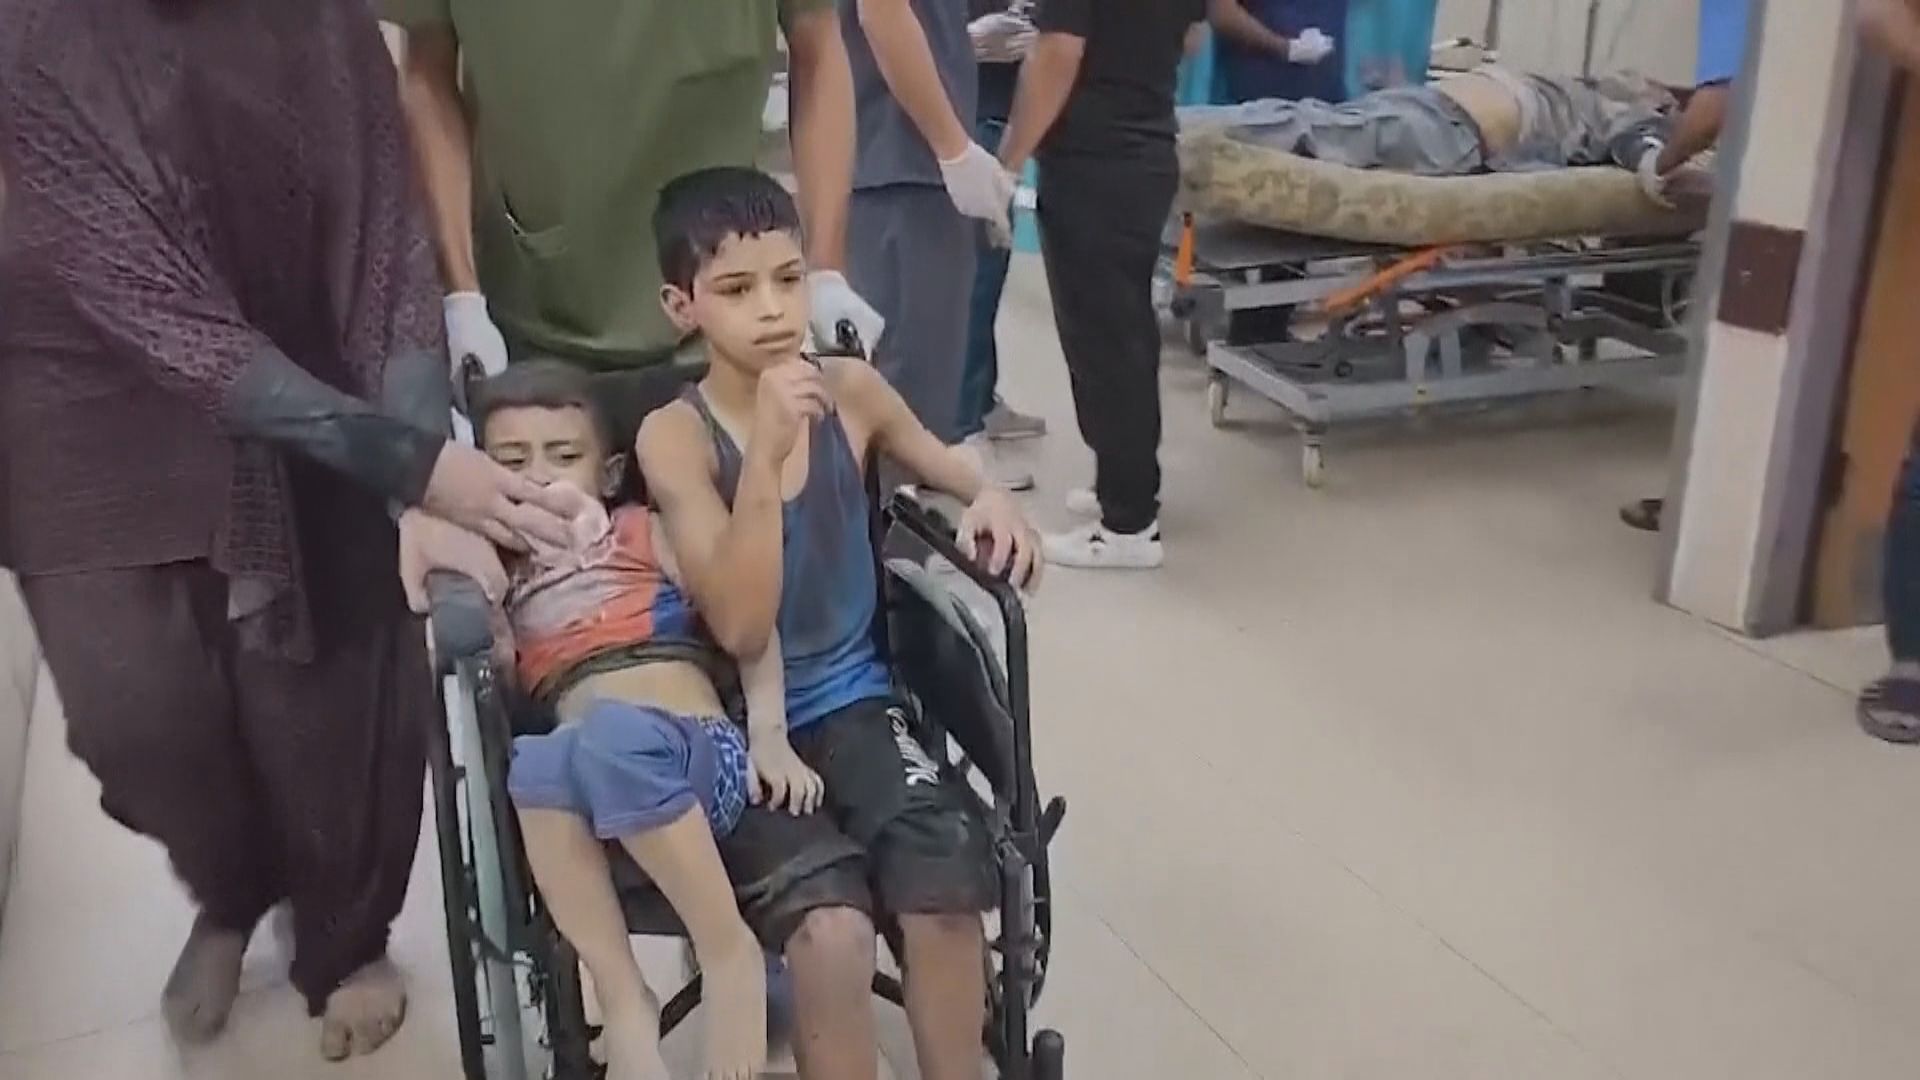 加沙衞生部門指當地死亡人數增至逾2300人 近一萬人受傷